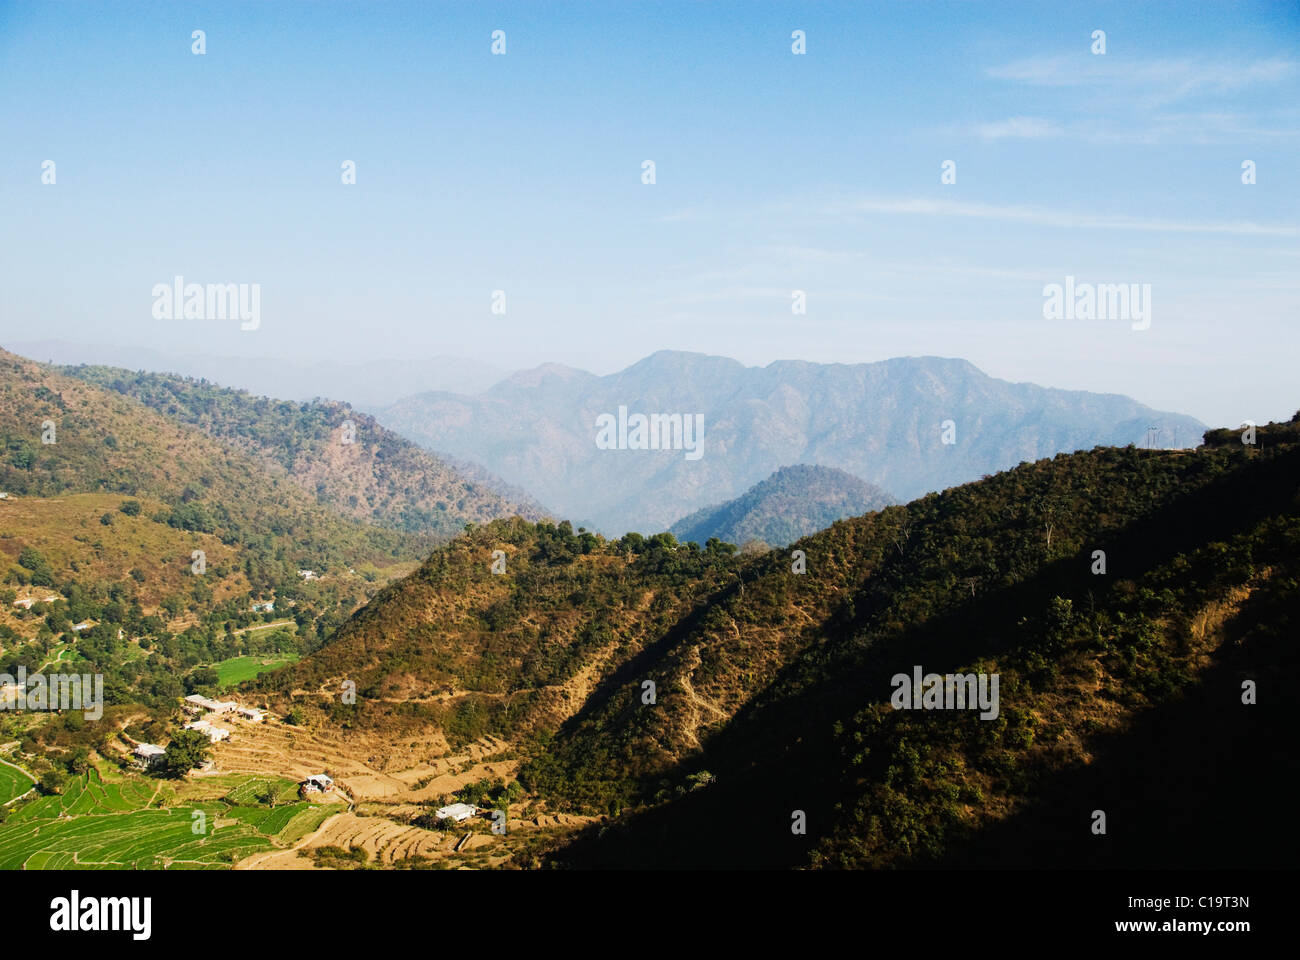 Panoramic view of a mountain range, Rishikesh, Uttarakhand, India Stock Photo